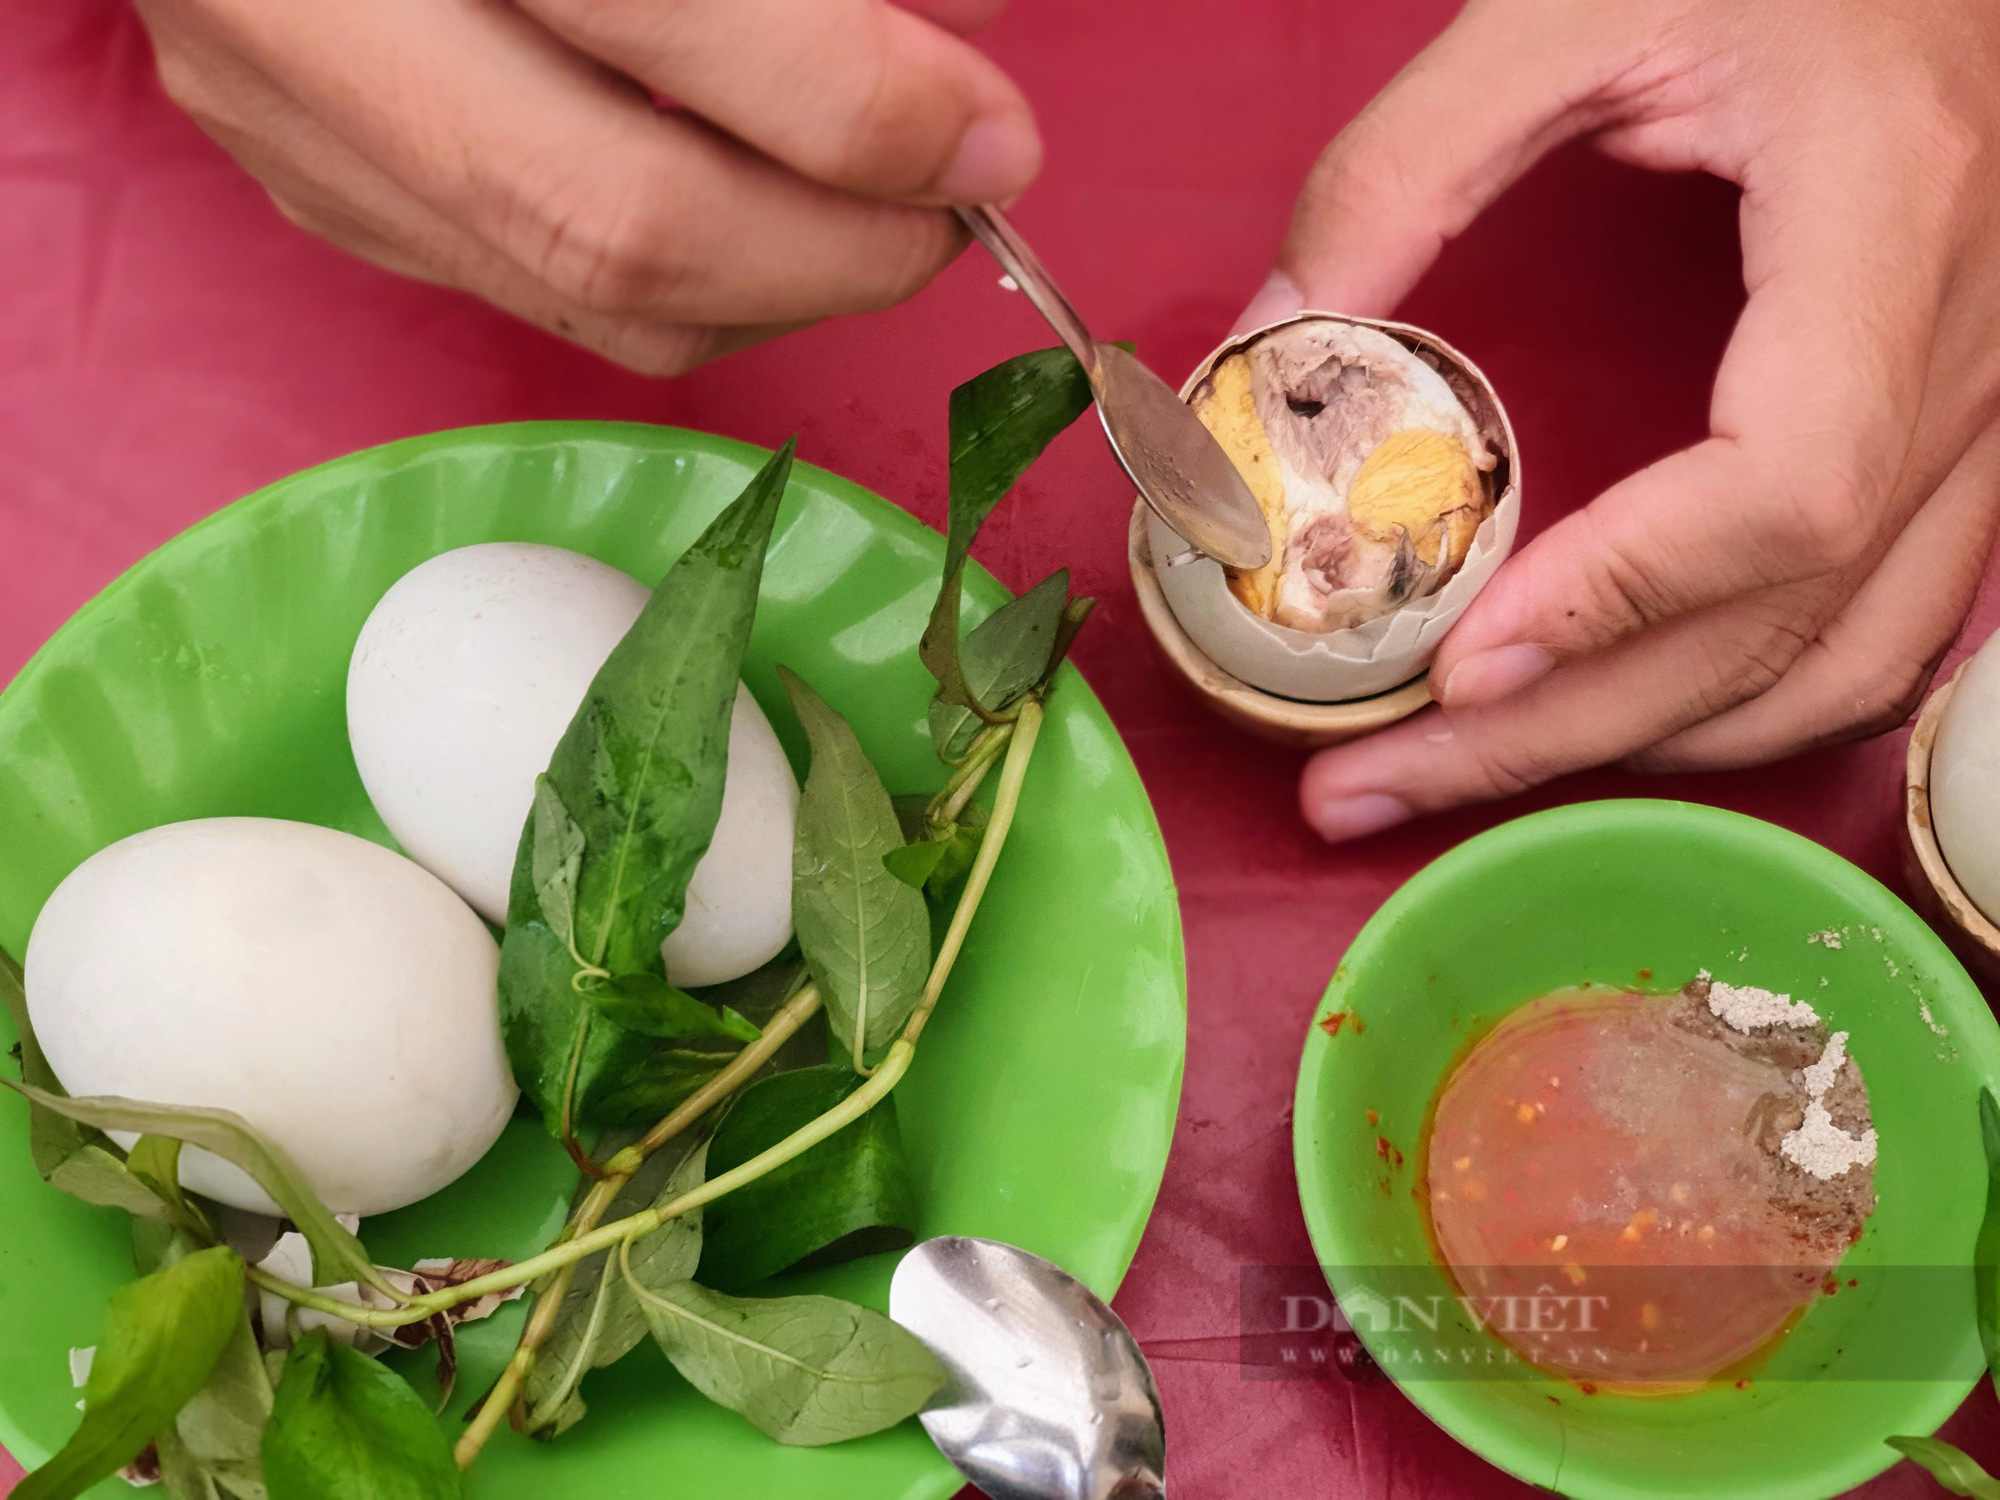 Sài Gòn quán: Quán hột vịt lộn nổi tiếng nhất khu nhà giàu Thảo Điền, 10 trứng úp mề như một-1